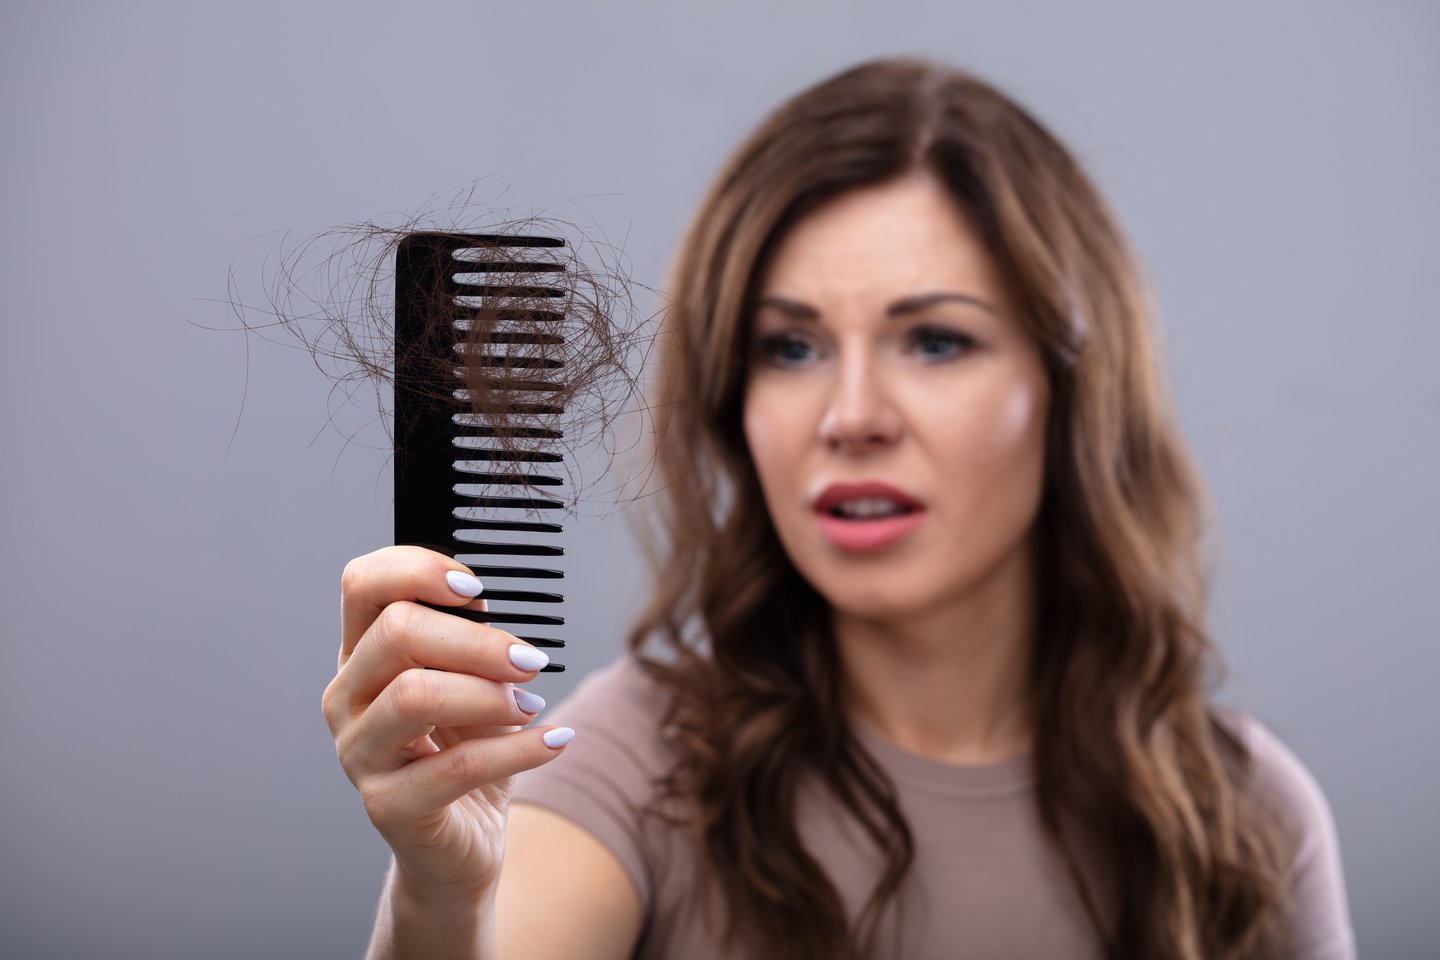 Gydytojos teigimu, dėl gausaus plaukų slinkimo ar plikimo išgyvena visi – tai rimta psichosocialinė problema.<br> 123rf.com asociatyvi nuotr.